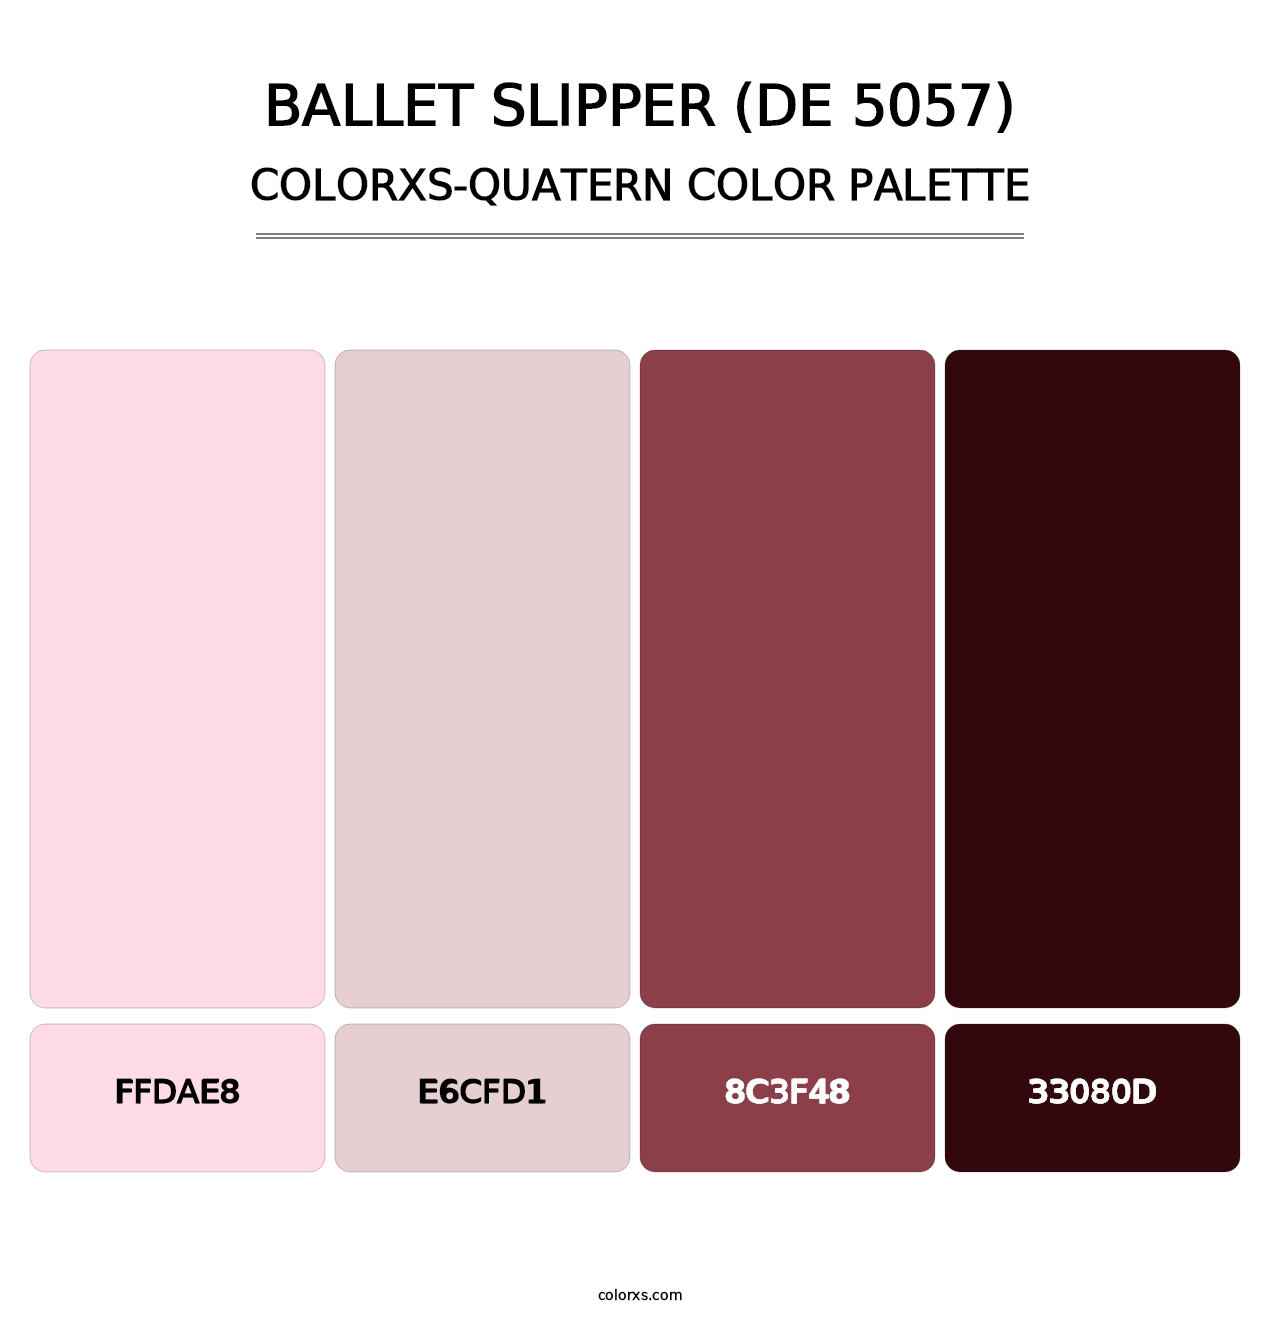 Ballet Slipper (DE 5057) - Colorxs Quatern Palette